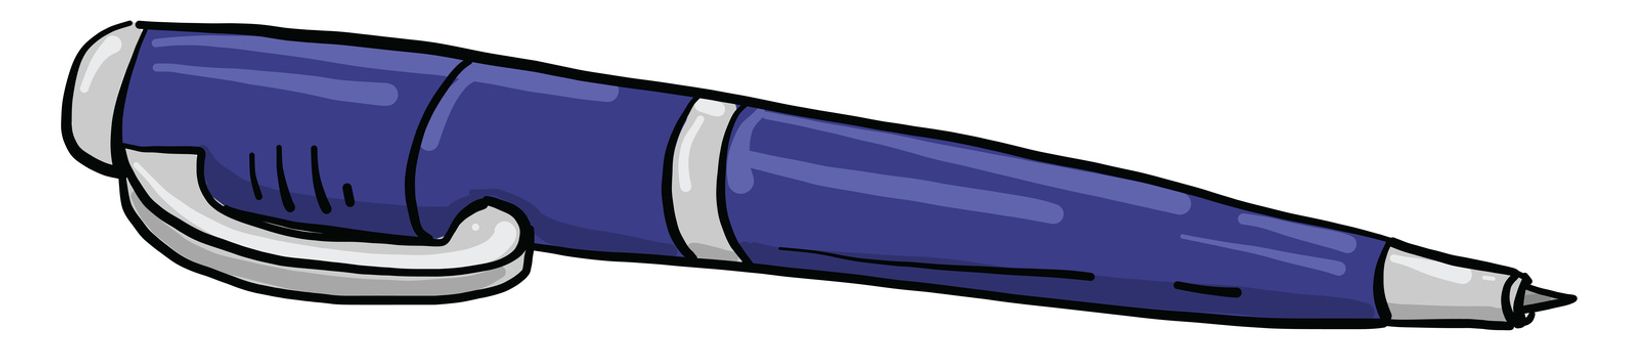 Blue pen , illustration, vector on white background